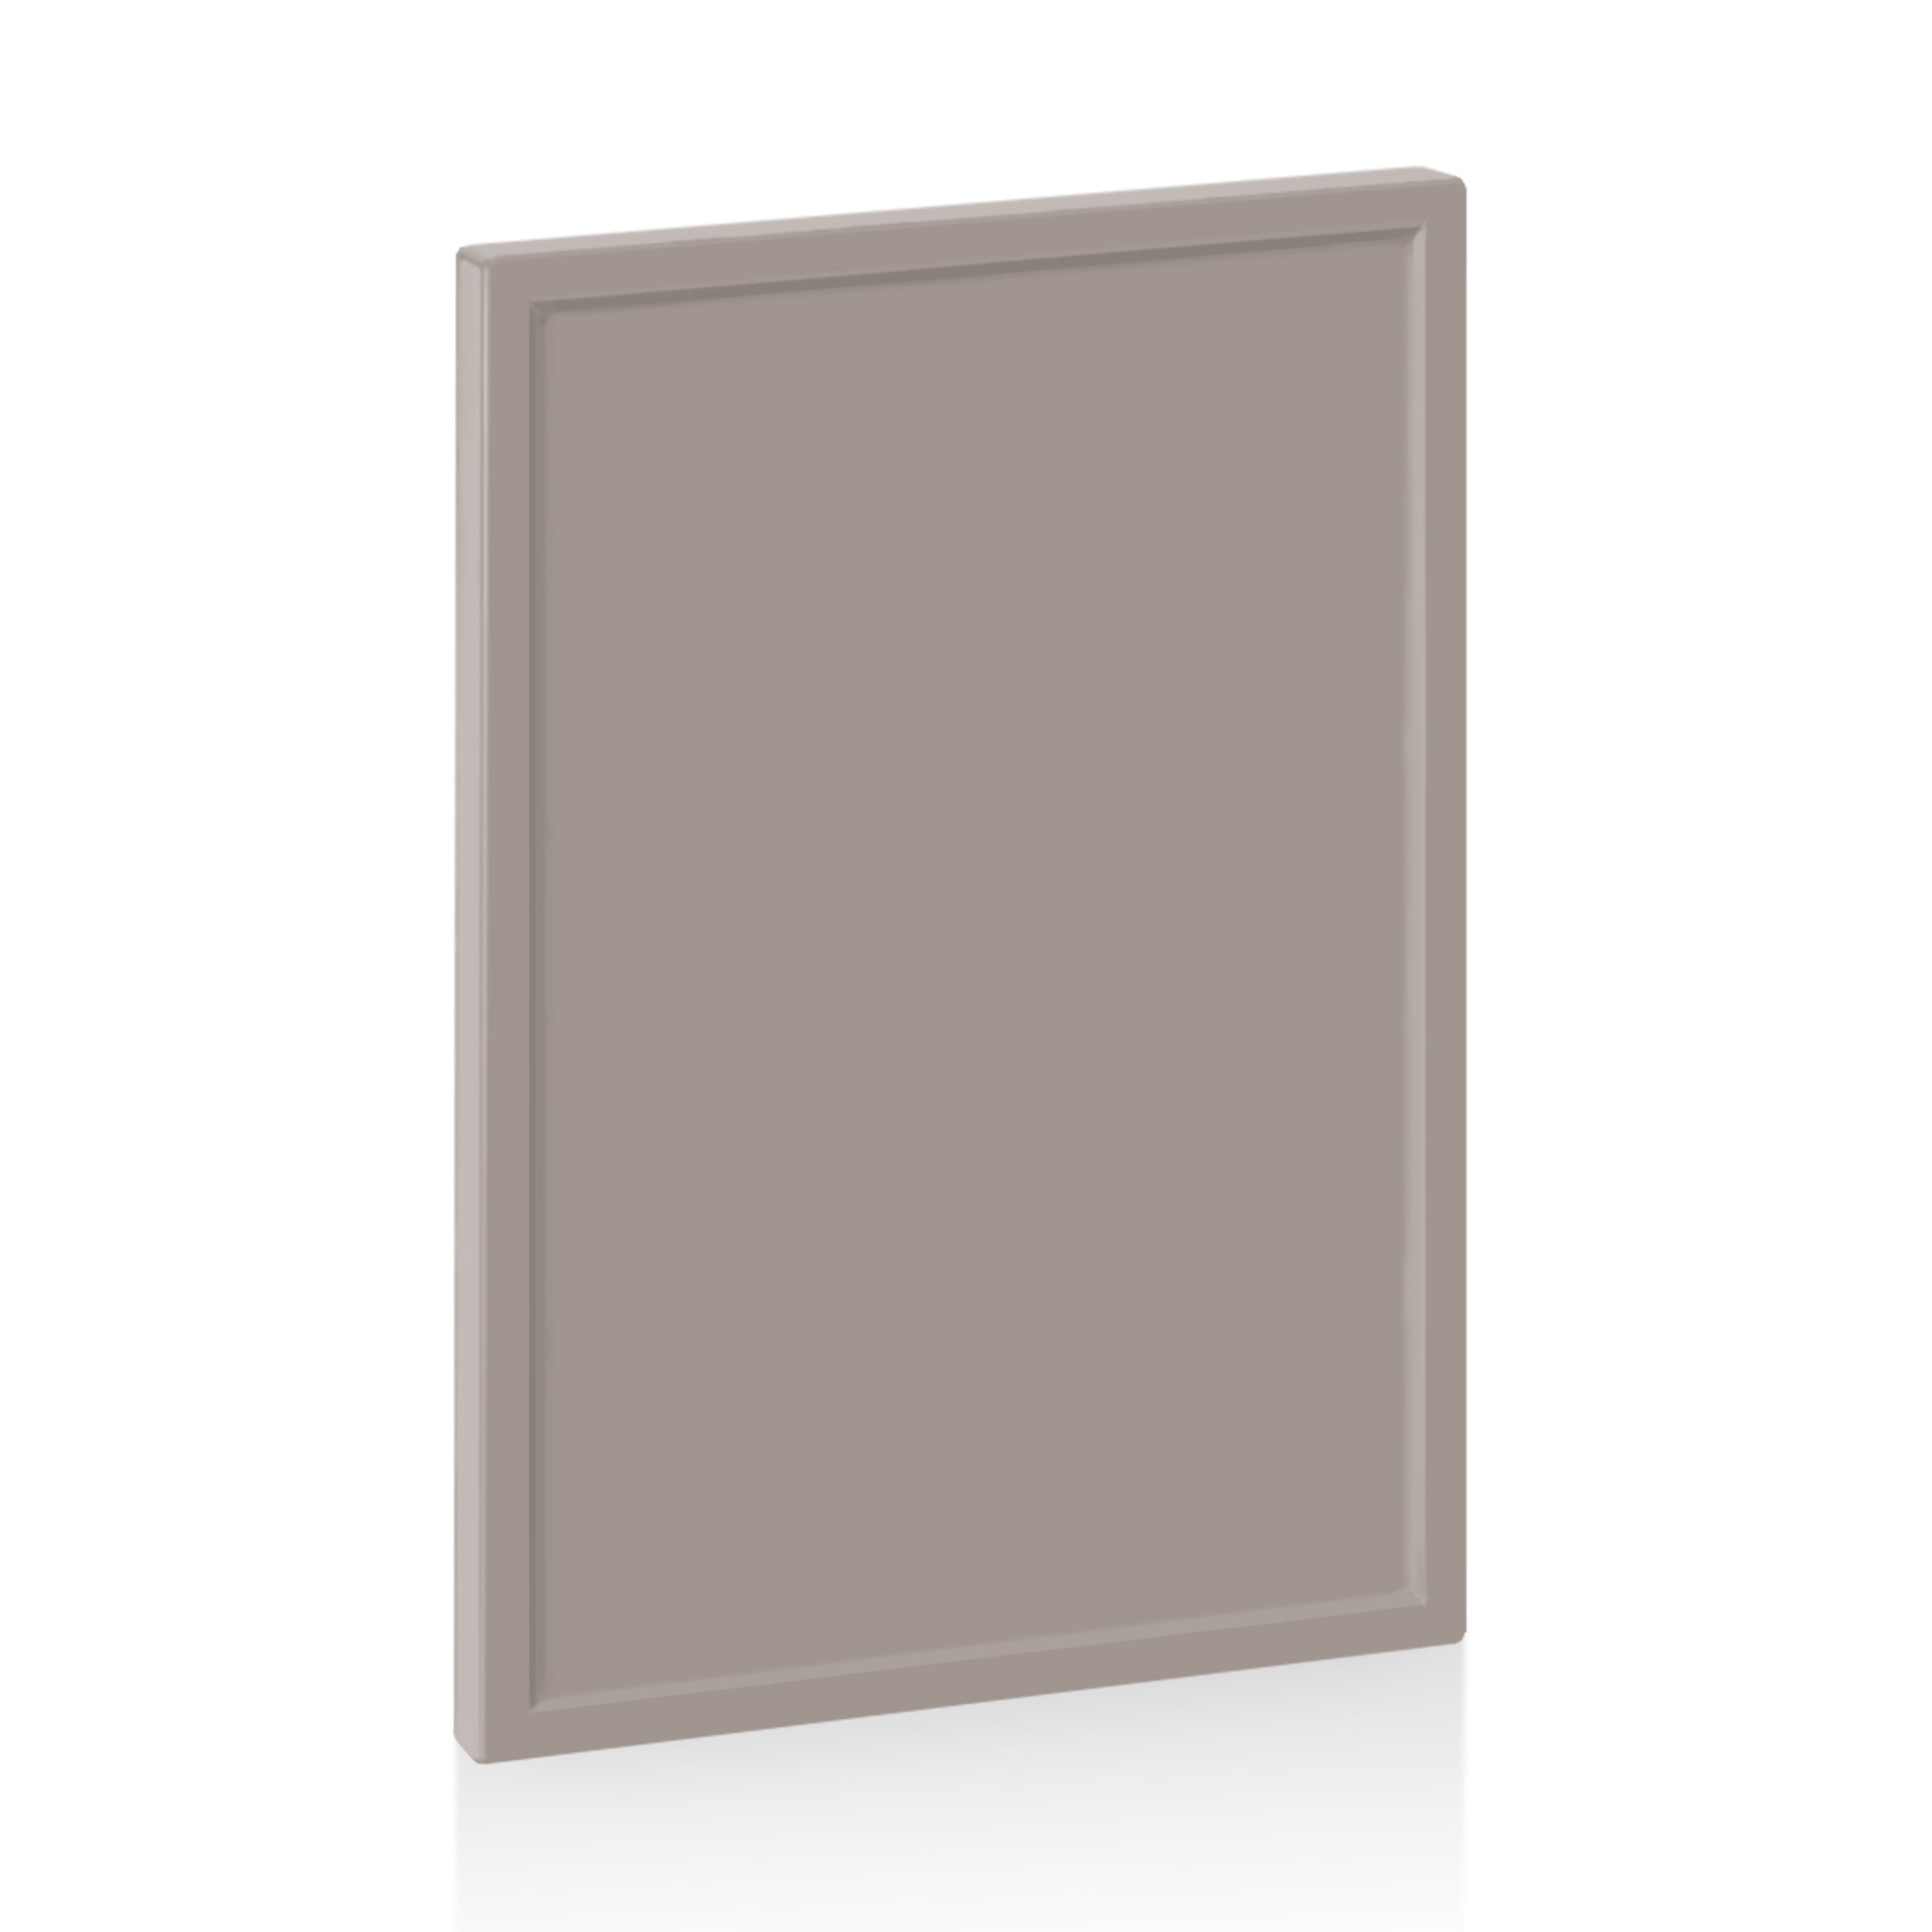 Replacement Cabinet Doors, Drawers & Panels - Supermatte Quarterline Desert Grey / Door